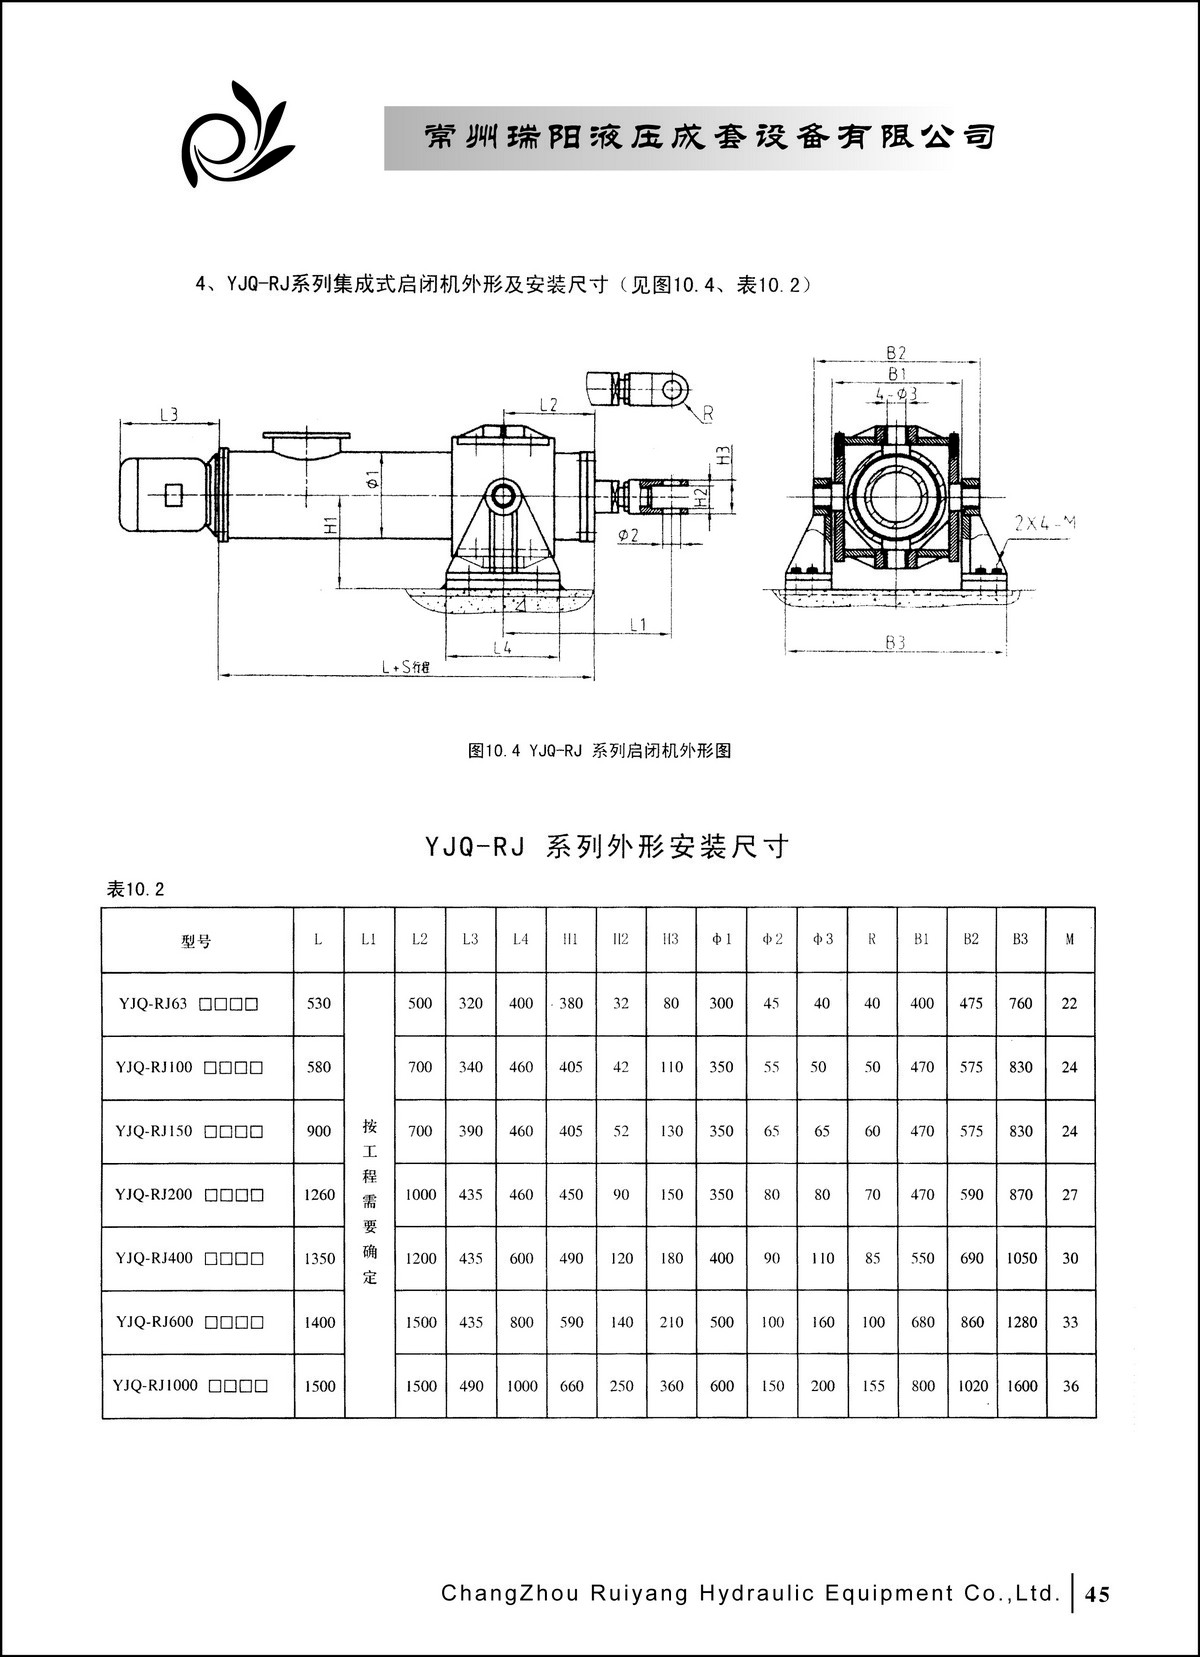 常州瑞阳液压成套设备有限公司产品样本2_页面_45.JPG